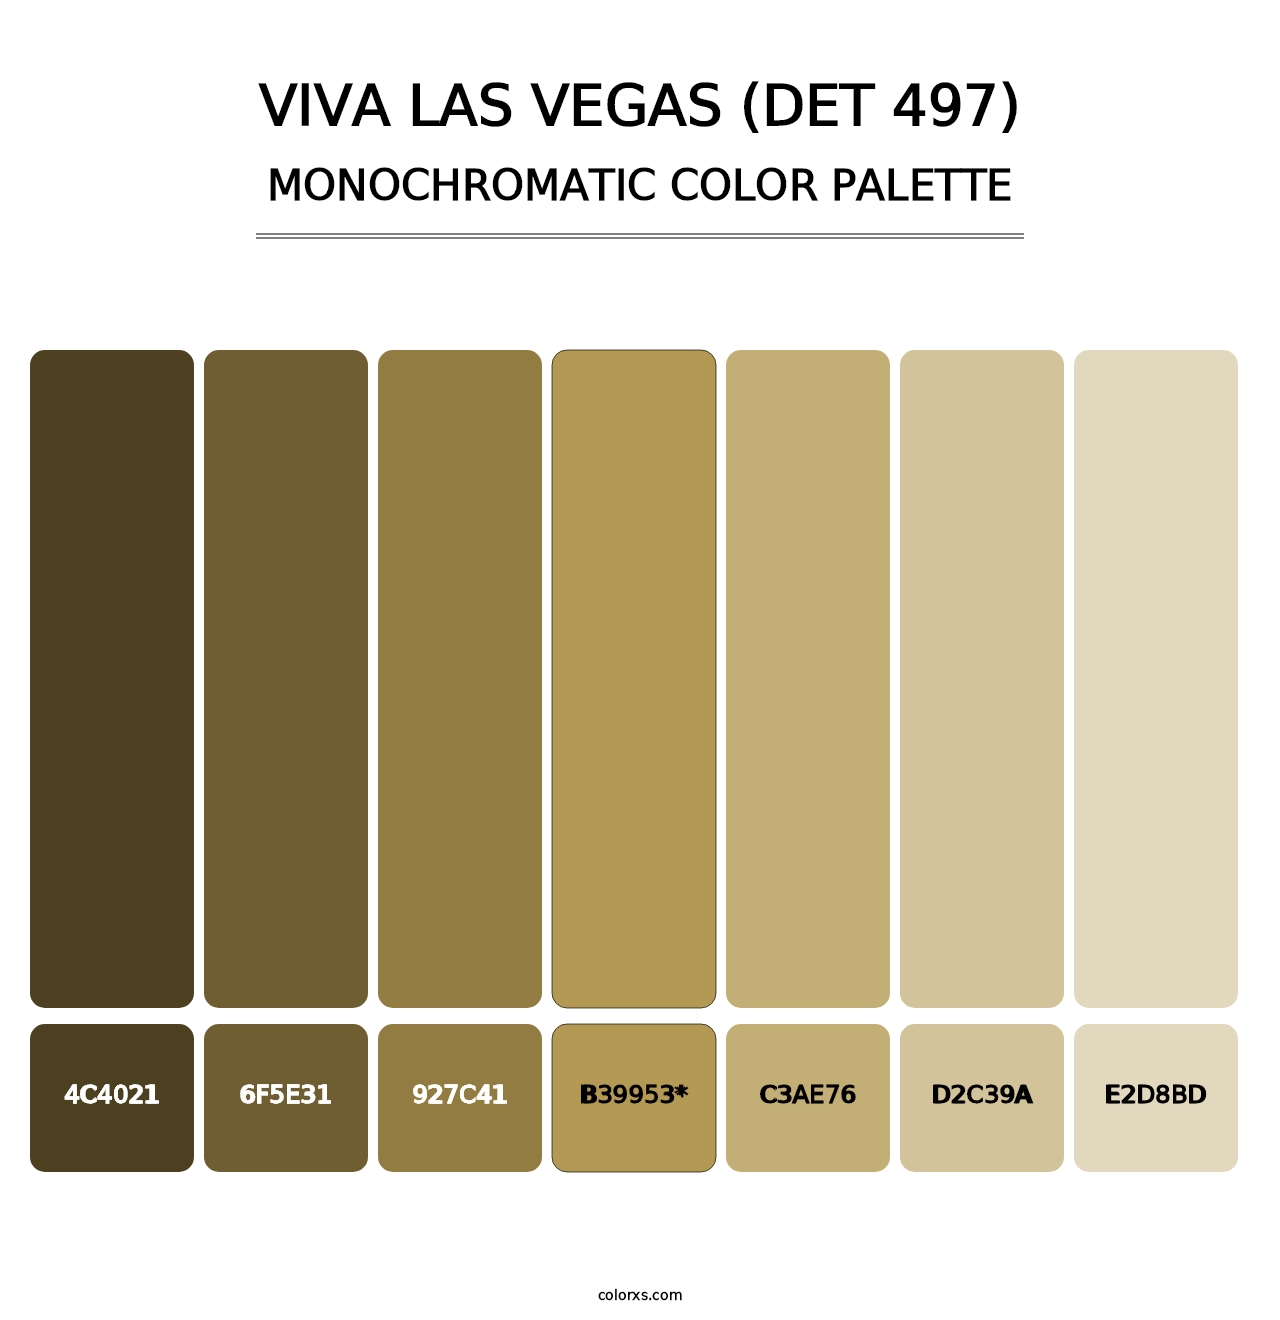 Viva Las Vegas (DET 497) - Monochromatic Color Palette